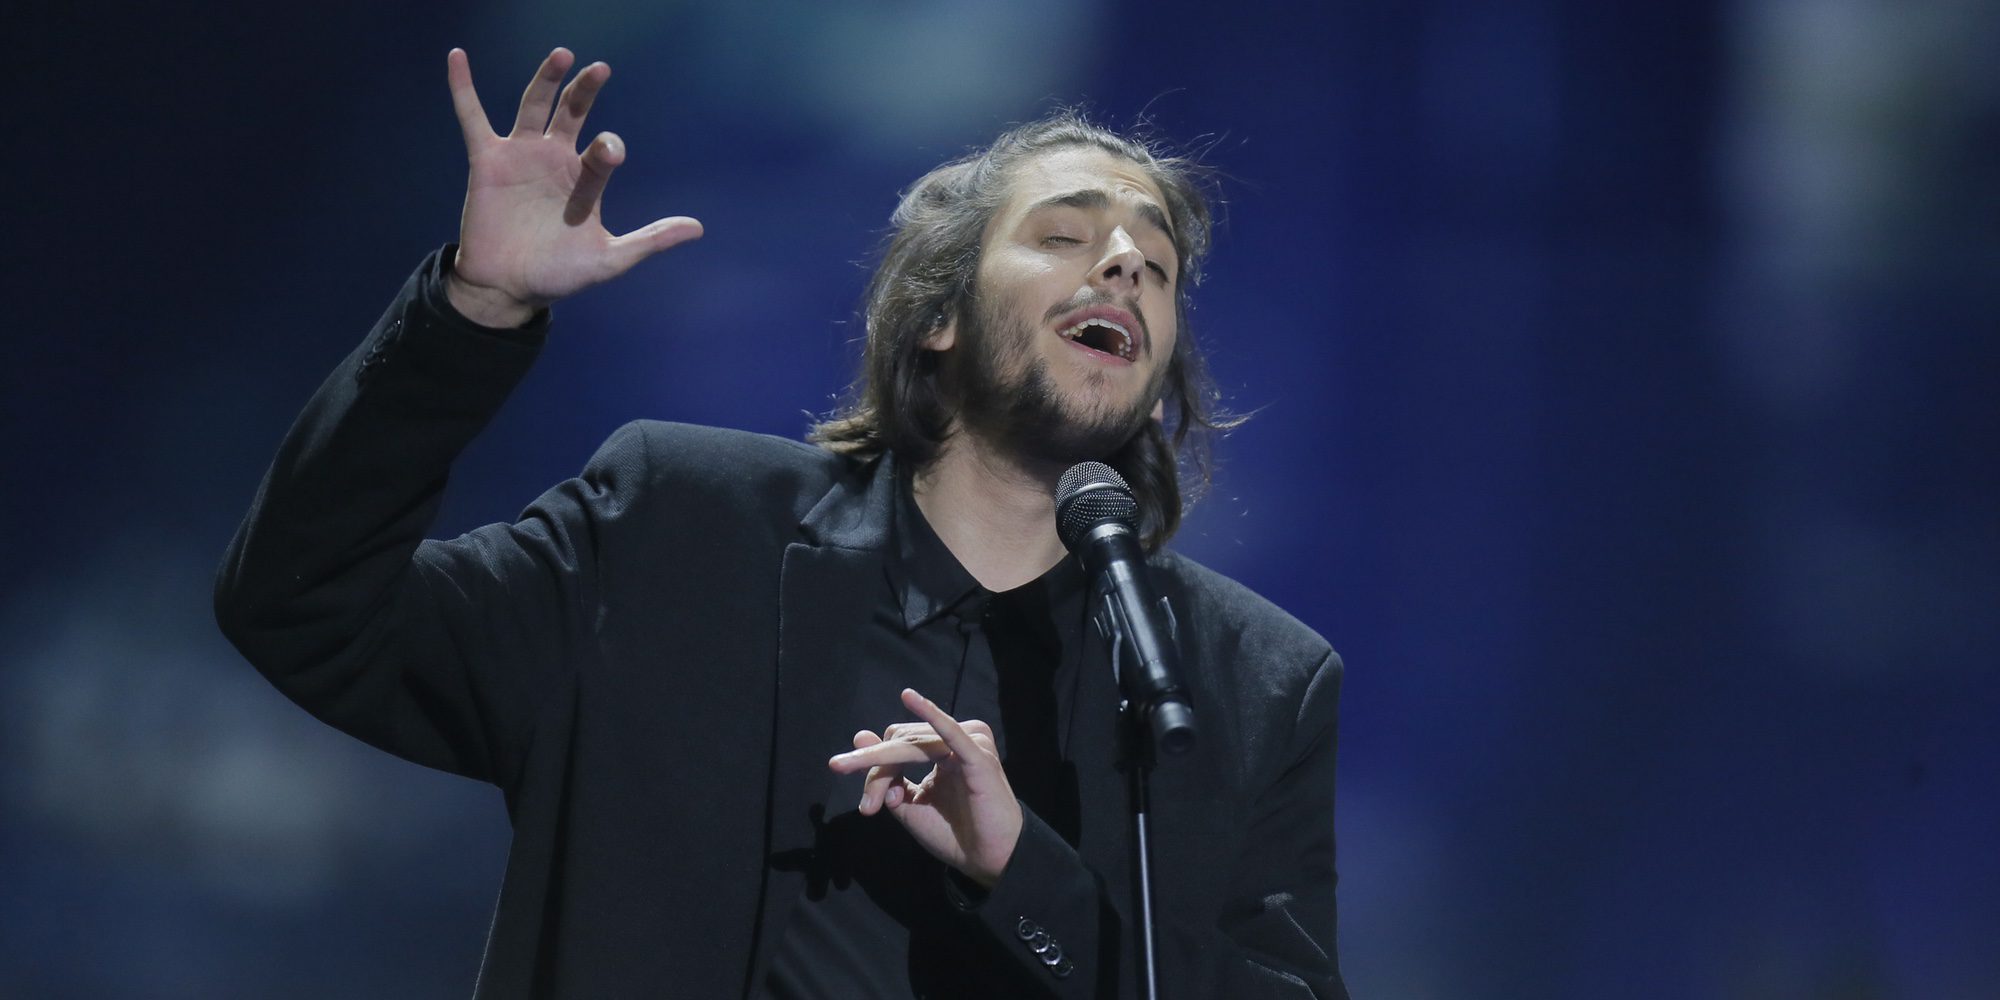 El candidato portugués Salvador Sobral arrasa en la semifinal del Festival de Eurovisión 2017